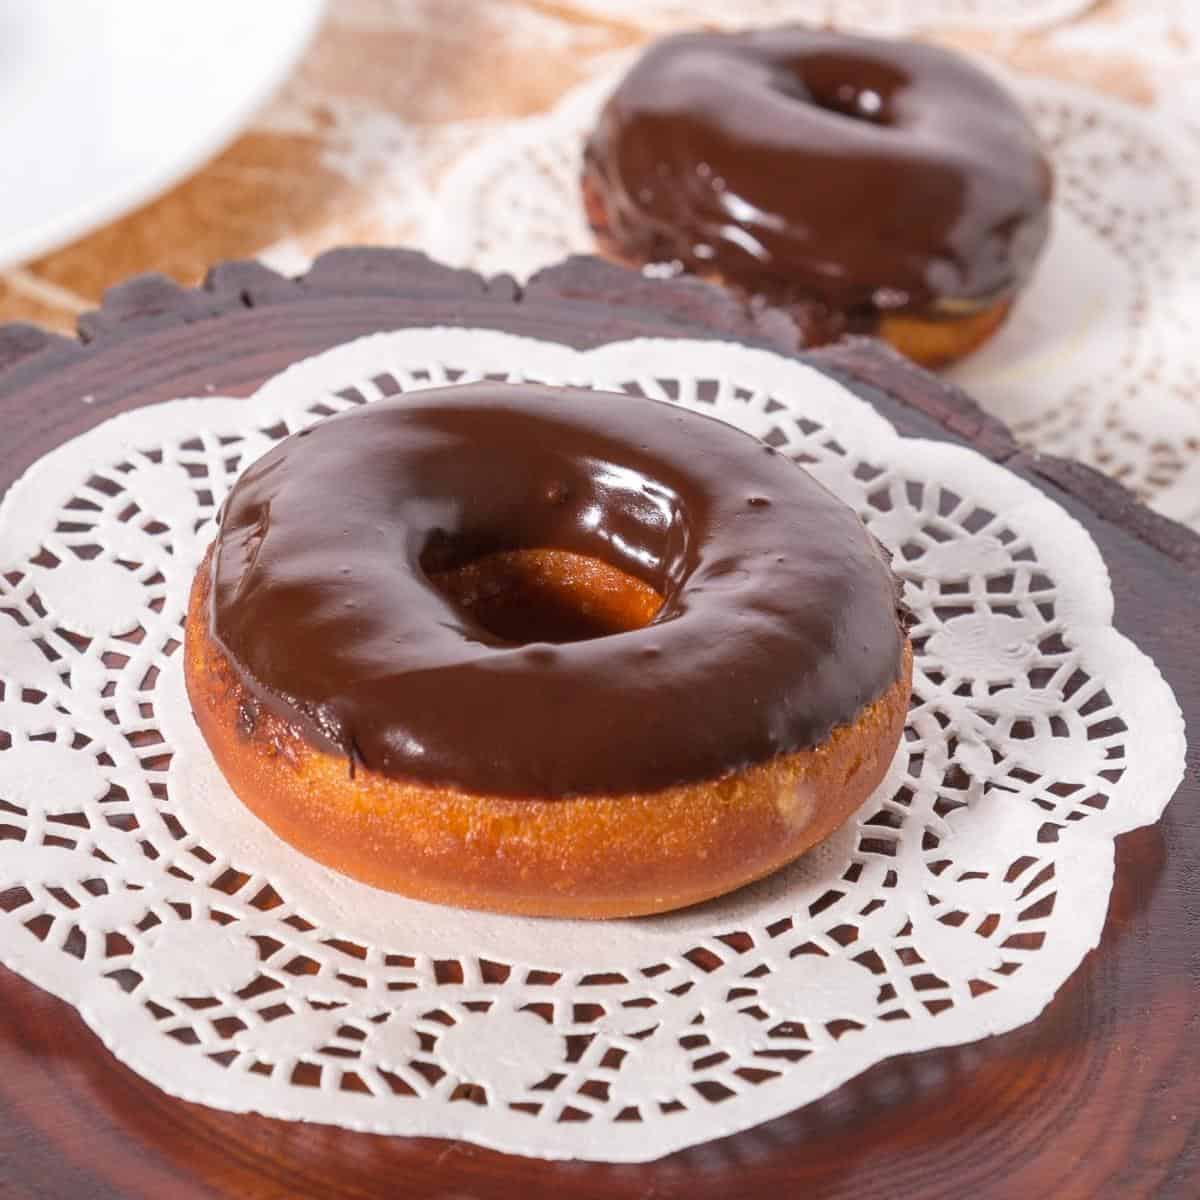 Glazed Donuts with Chocolate Glaze